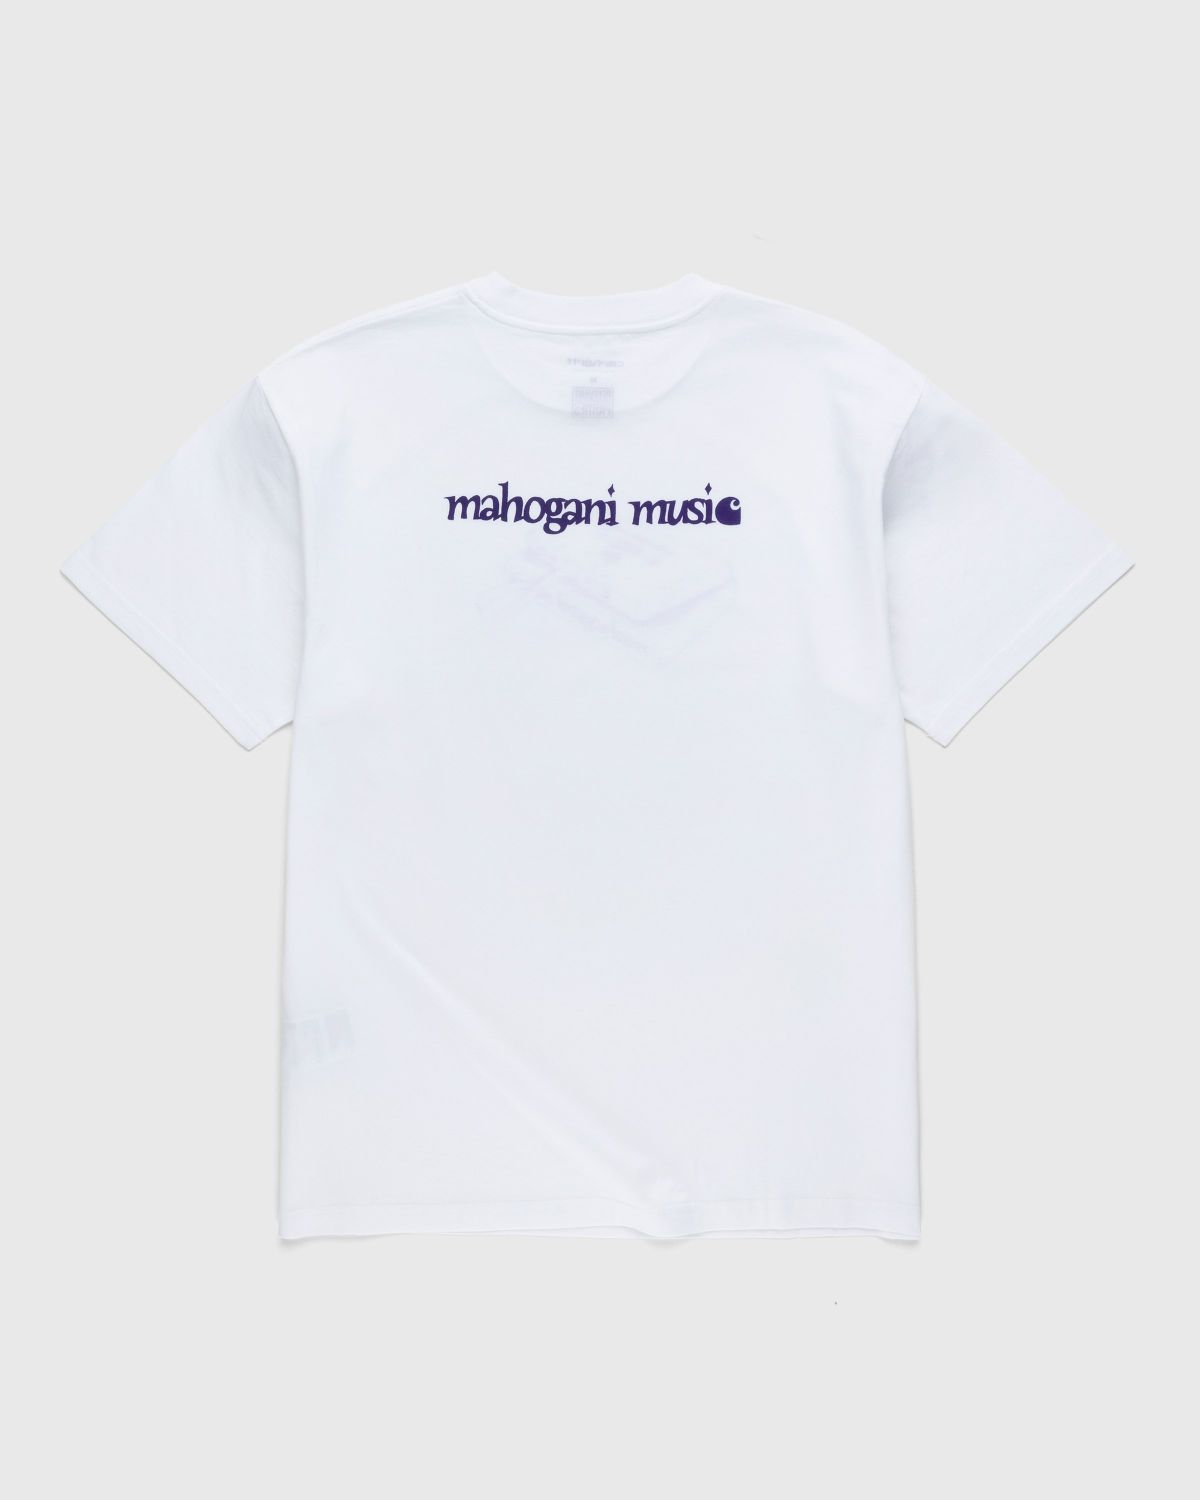 Carhartt WIP – Mahogani Music T-Shirt White/Purple - T-shirts - White - Image 2